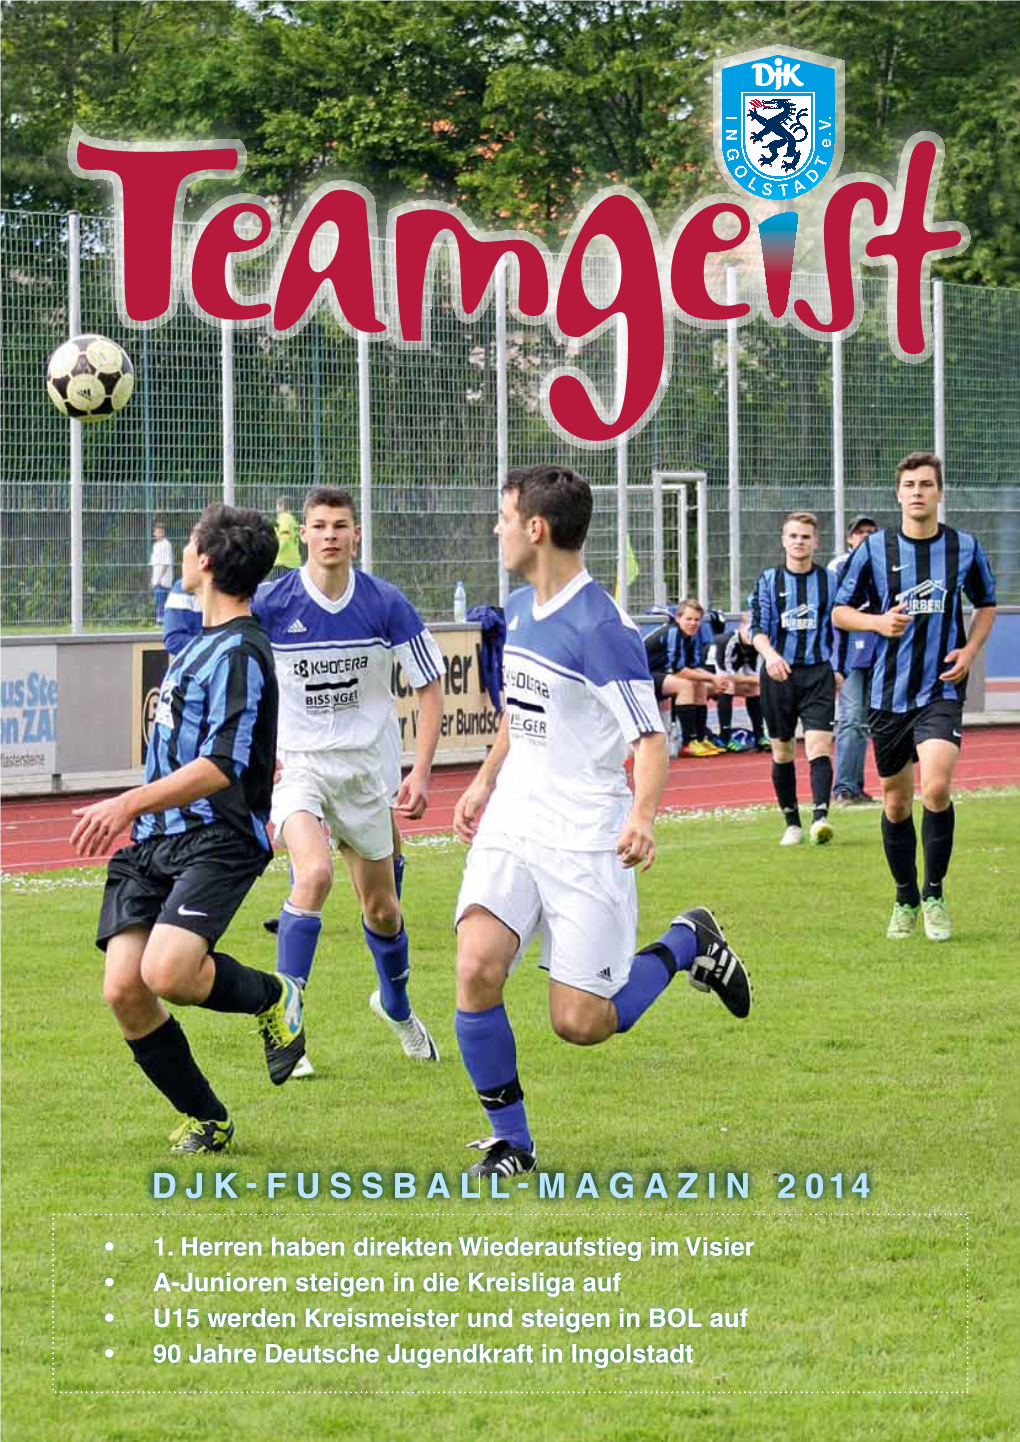 Djk-Fussball-Magazin 2014